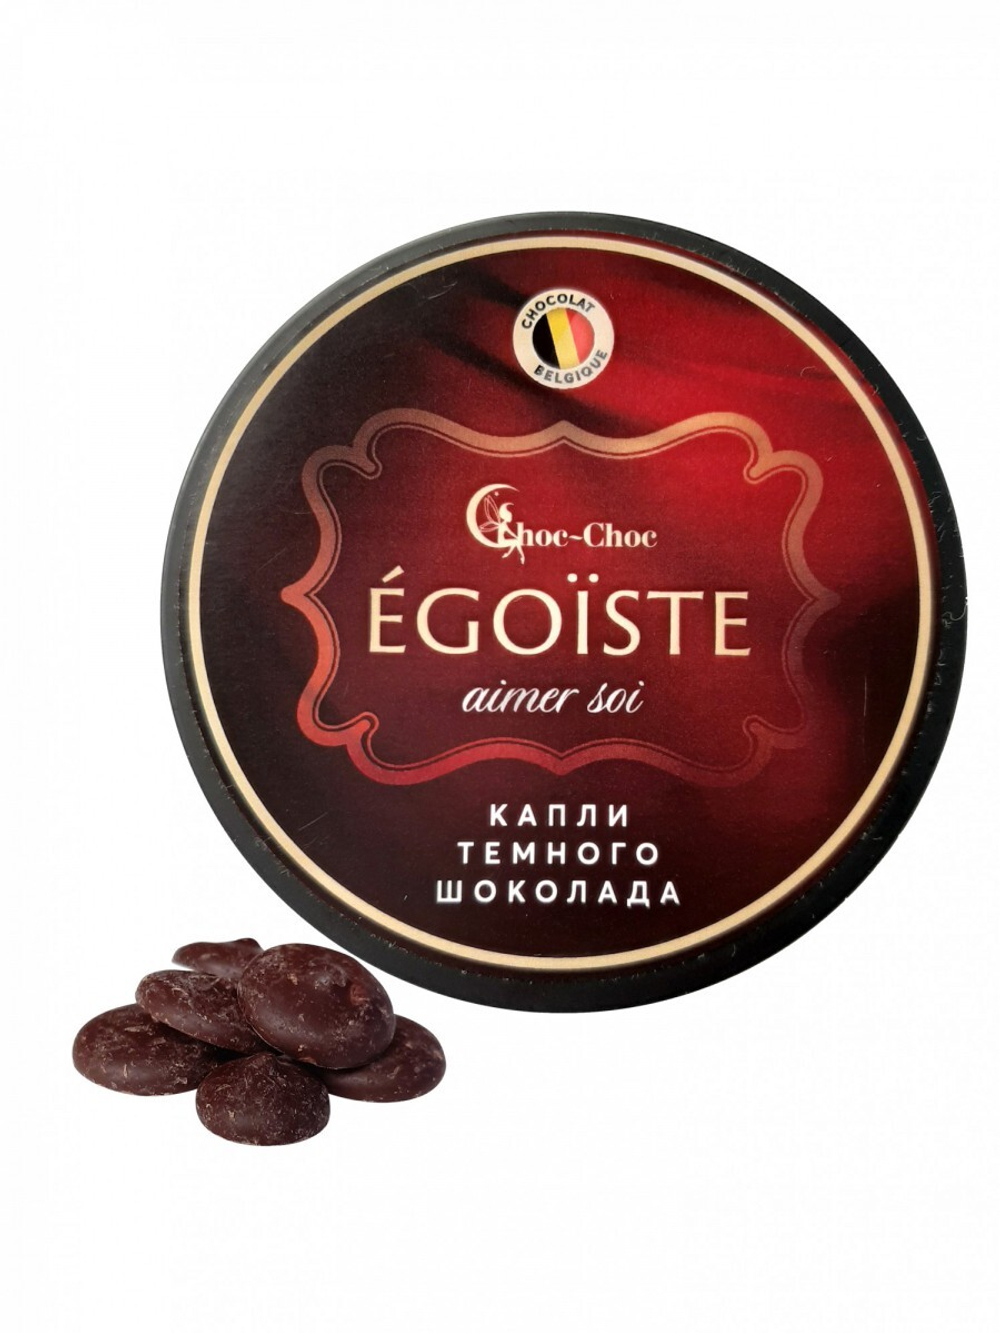 Состав бельгийского шоколада. Бельгийский темный шоколад. Choc choc эффект кожа.